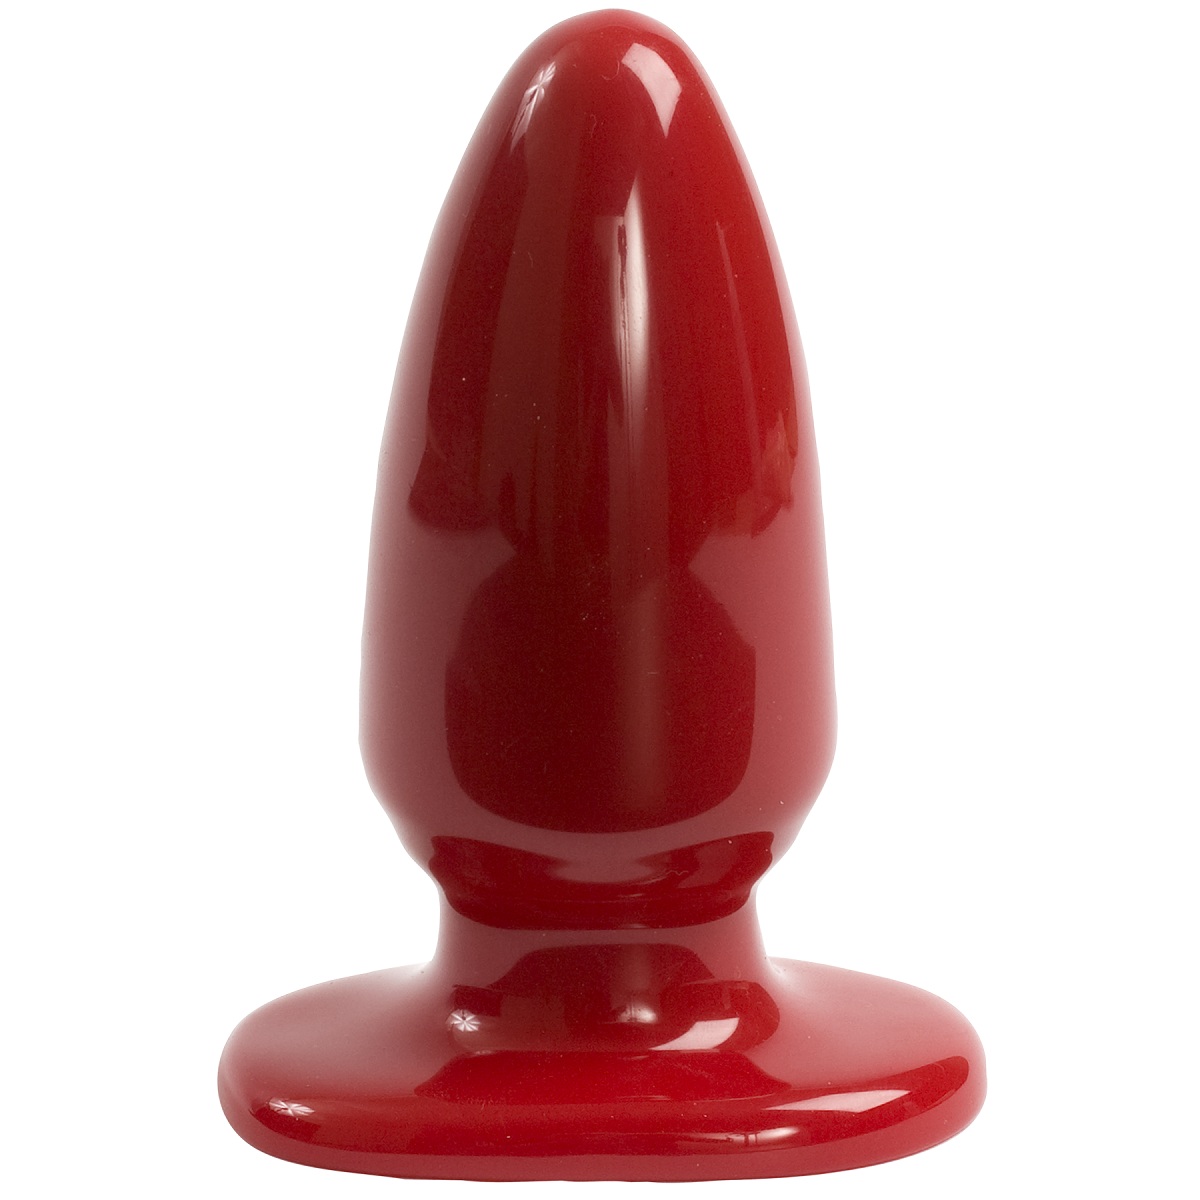 Ярко красная анальная пробка Red Boy Line Large Butt Plug. Сильный и крепкий стимулятор конической формы для максимально комфортного введения.<br><br> Мягкая и гибкая текстура словно создана для идеального проникновения.  Рабочая длина - 11,4 см.